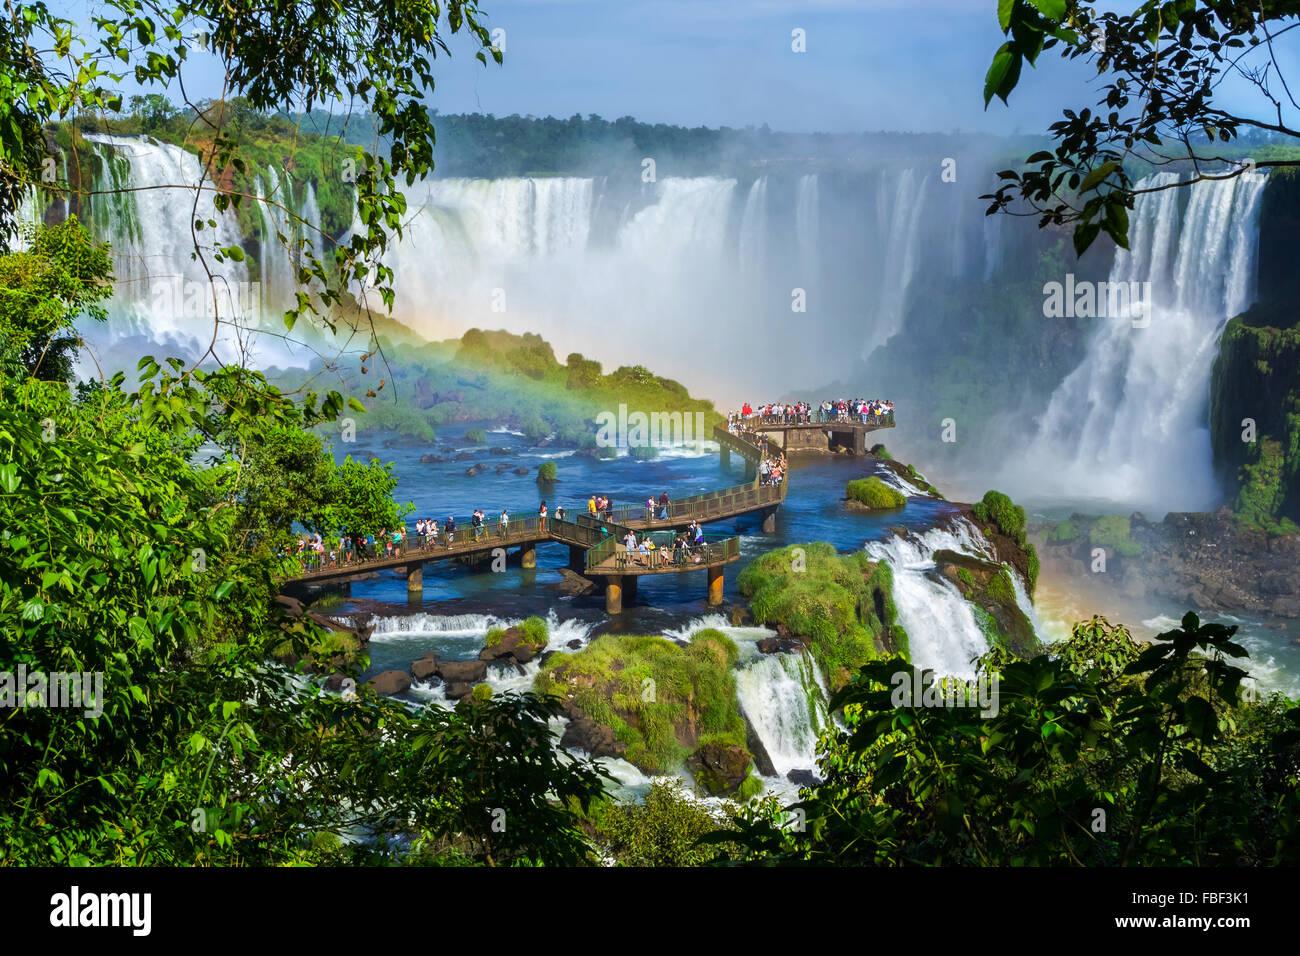 Les touristes à Iguazu Falls, l'une des grandes merveilles naturelles, à la frontière de l'Argentine et le Brésil. Banque D'Images